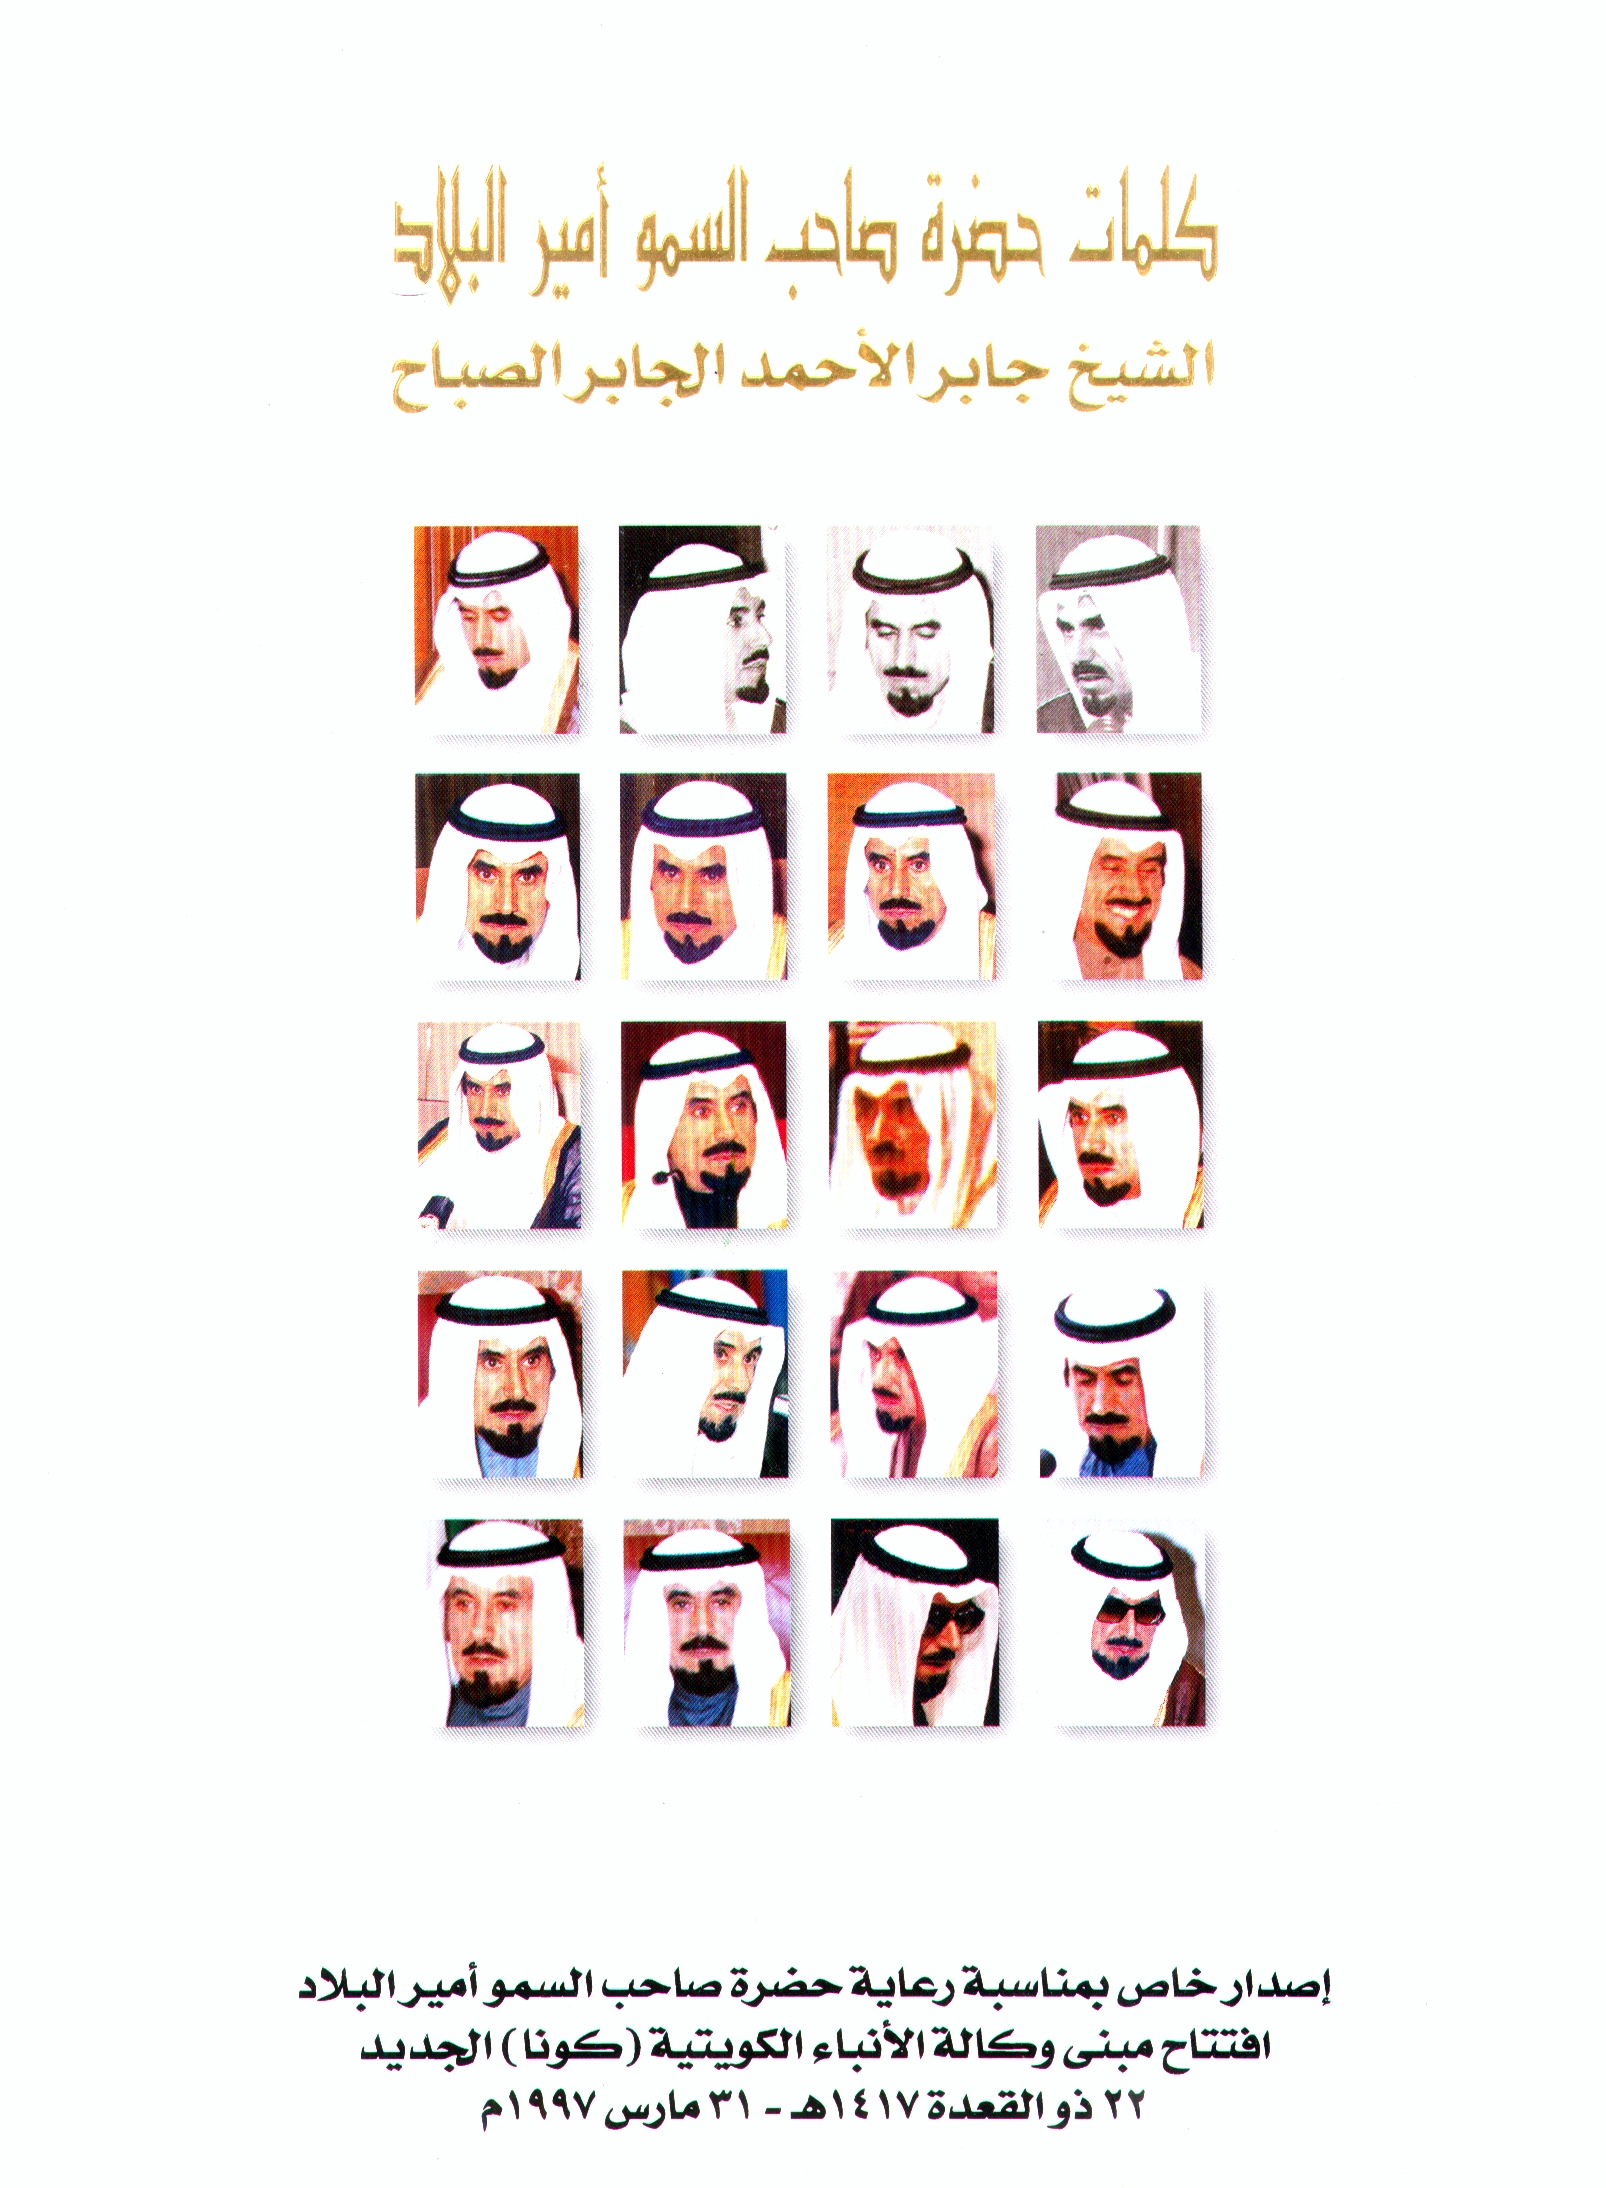 كلمات أمير دولة الكويت جابر الأحمد الجابر الصباح                                                                                                                                                                                                          